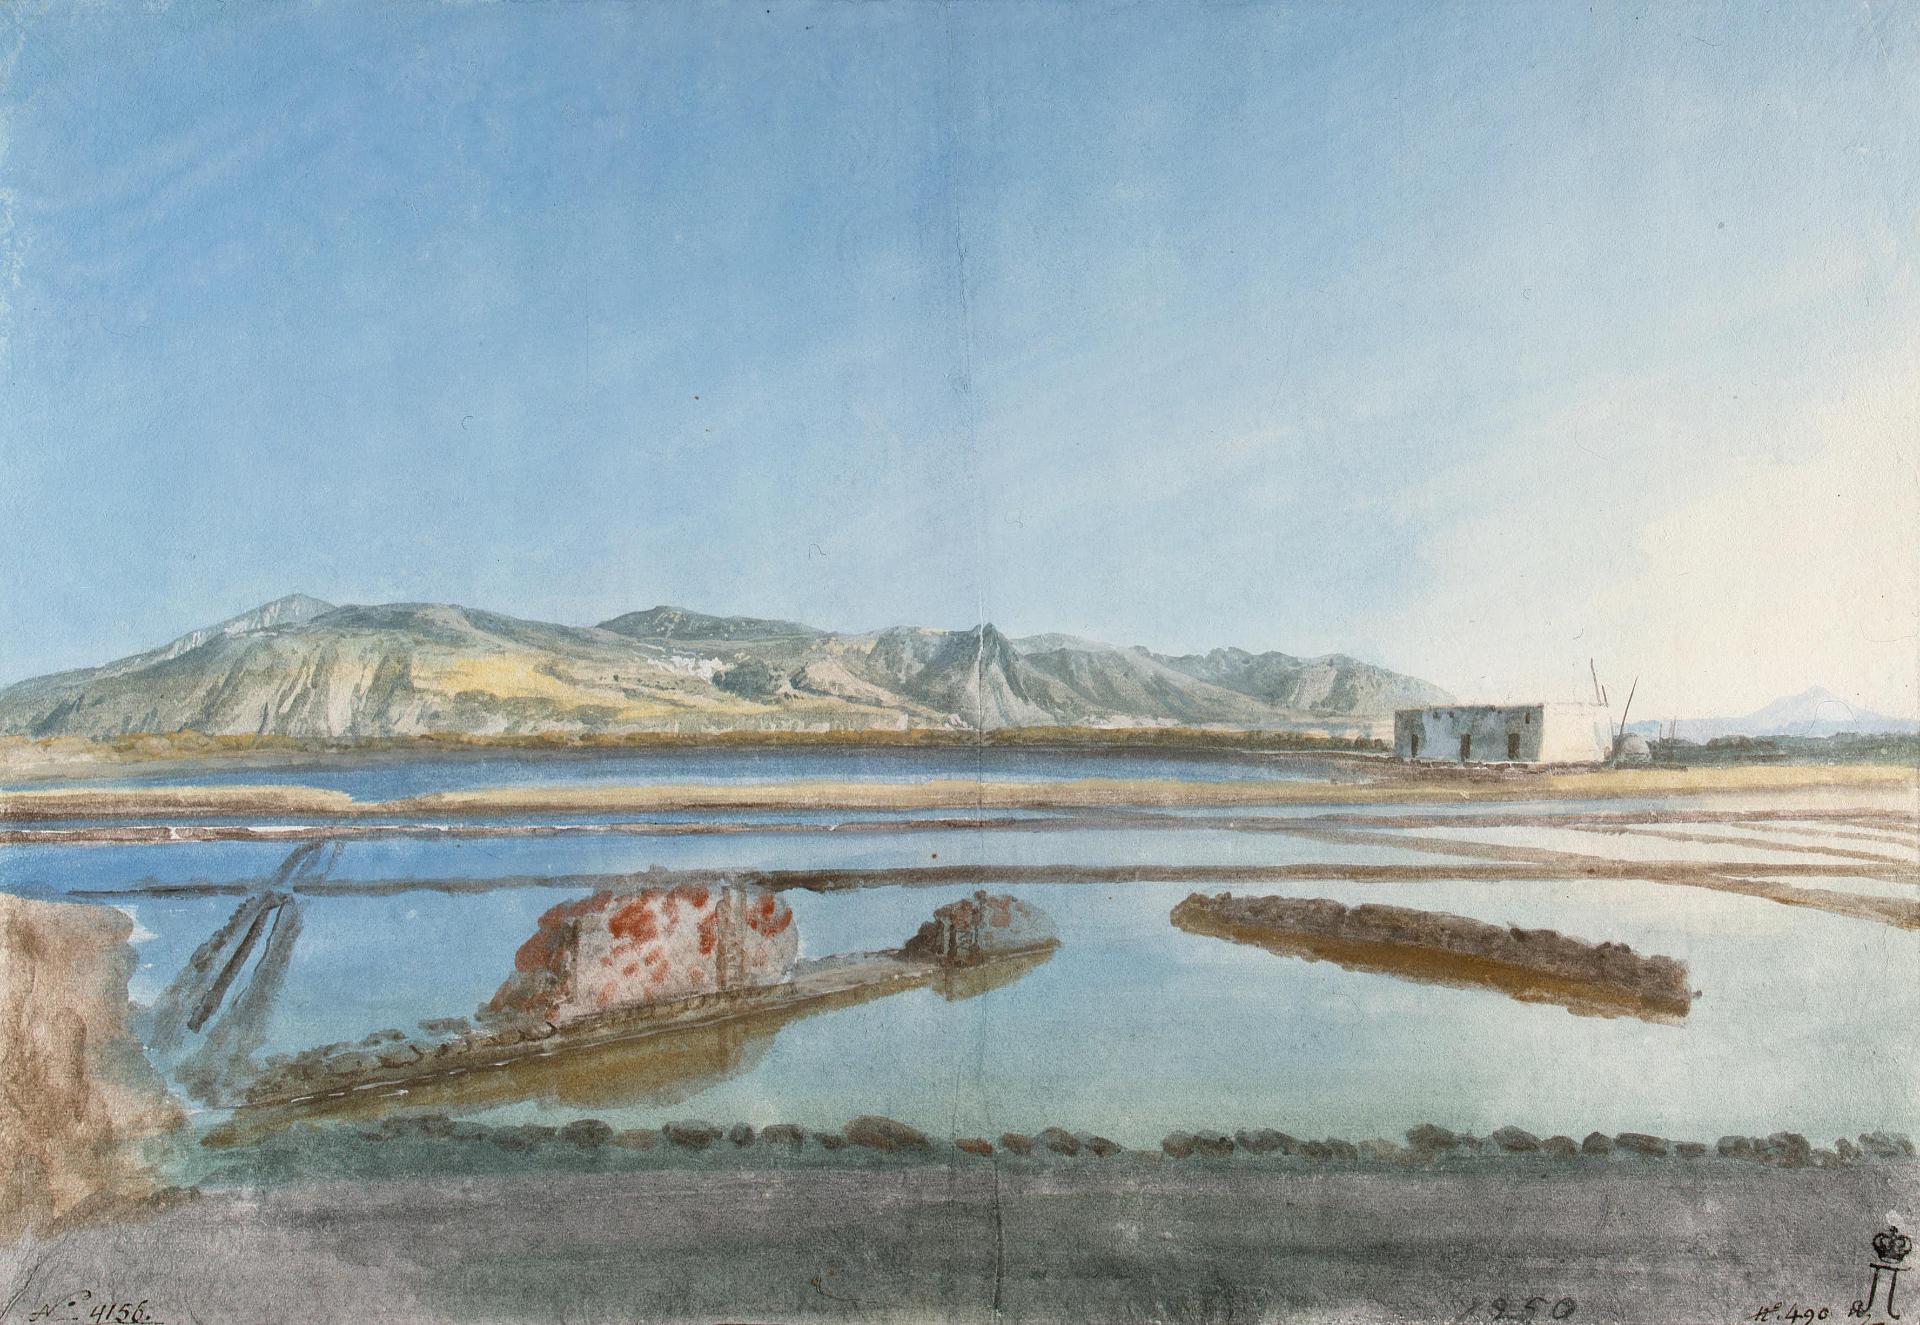 Жан-Пьер-Луи-Лоран Уэль. "Развалины античной солеварни на острове Салина". Между 1776-1779.